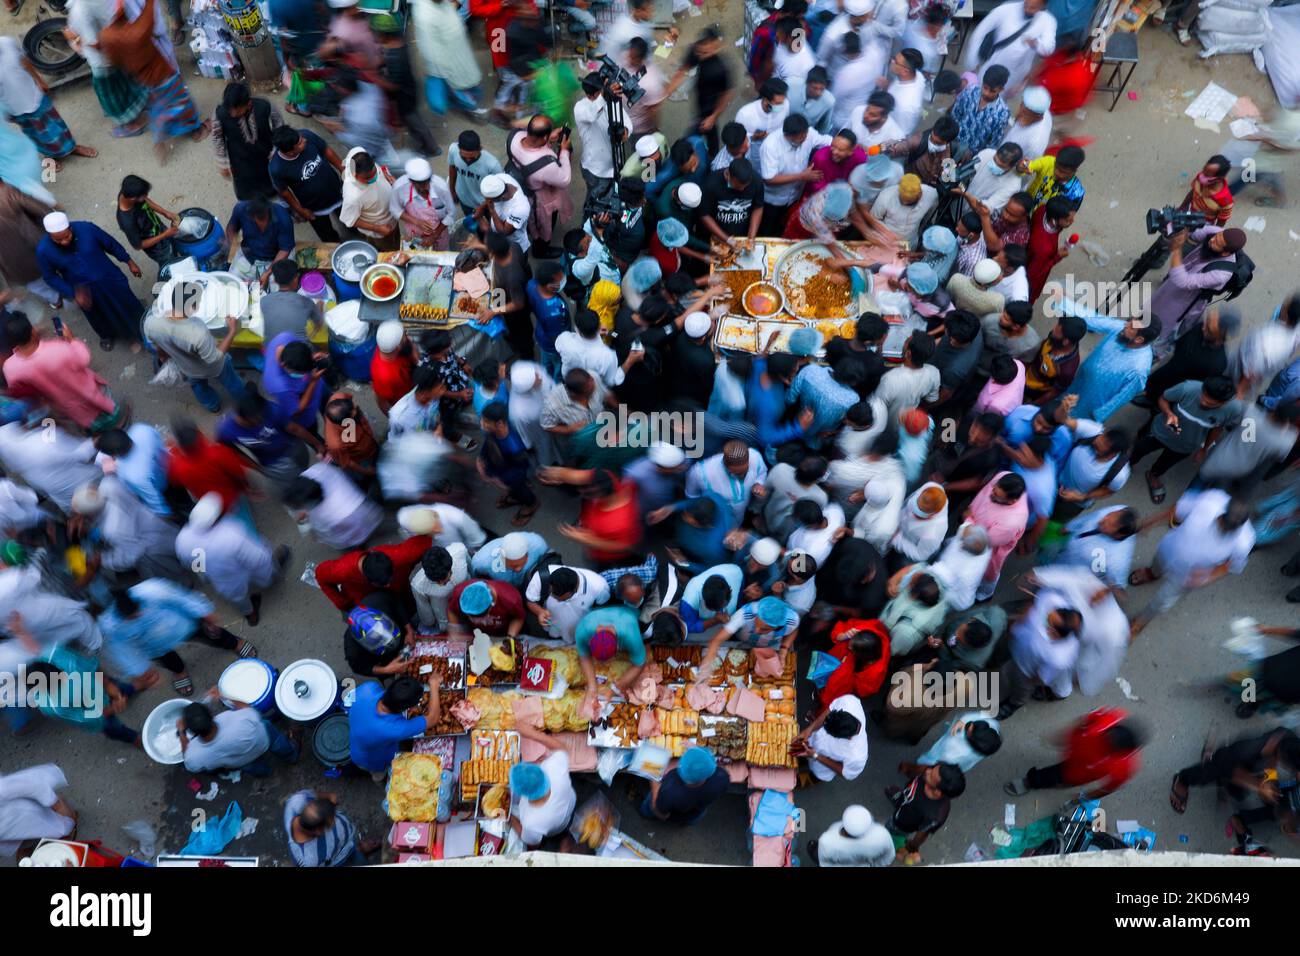 Am ersten Tag des ramadan in Dhaka, Bangladesch, kaufen die Menschen Lebensmittel von Ifter am 03. April 2022. Nach dem islamischen Kalender markiert der Ramadan den verheißungsvollen Monat des Islam auf der ganzen Welt. Er gilt als der neunte Monat des islamischen Kalenders und findet am Ende des Saban-Monats statt. (Foto von Kazi Salahuddin Razu/NurPhoto) Stockfoto